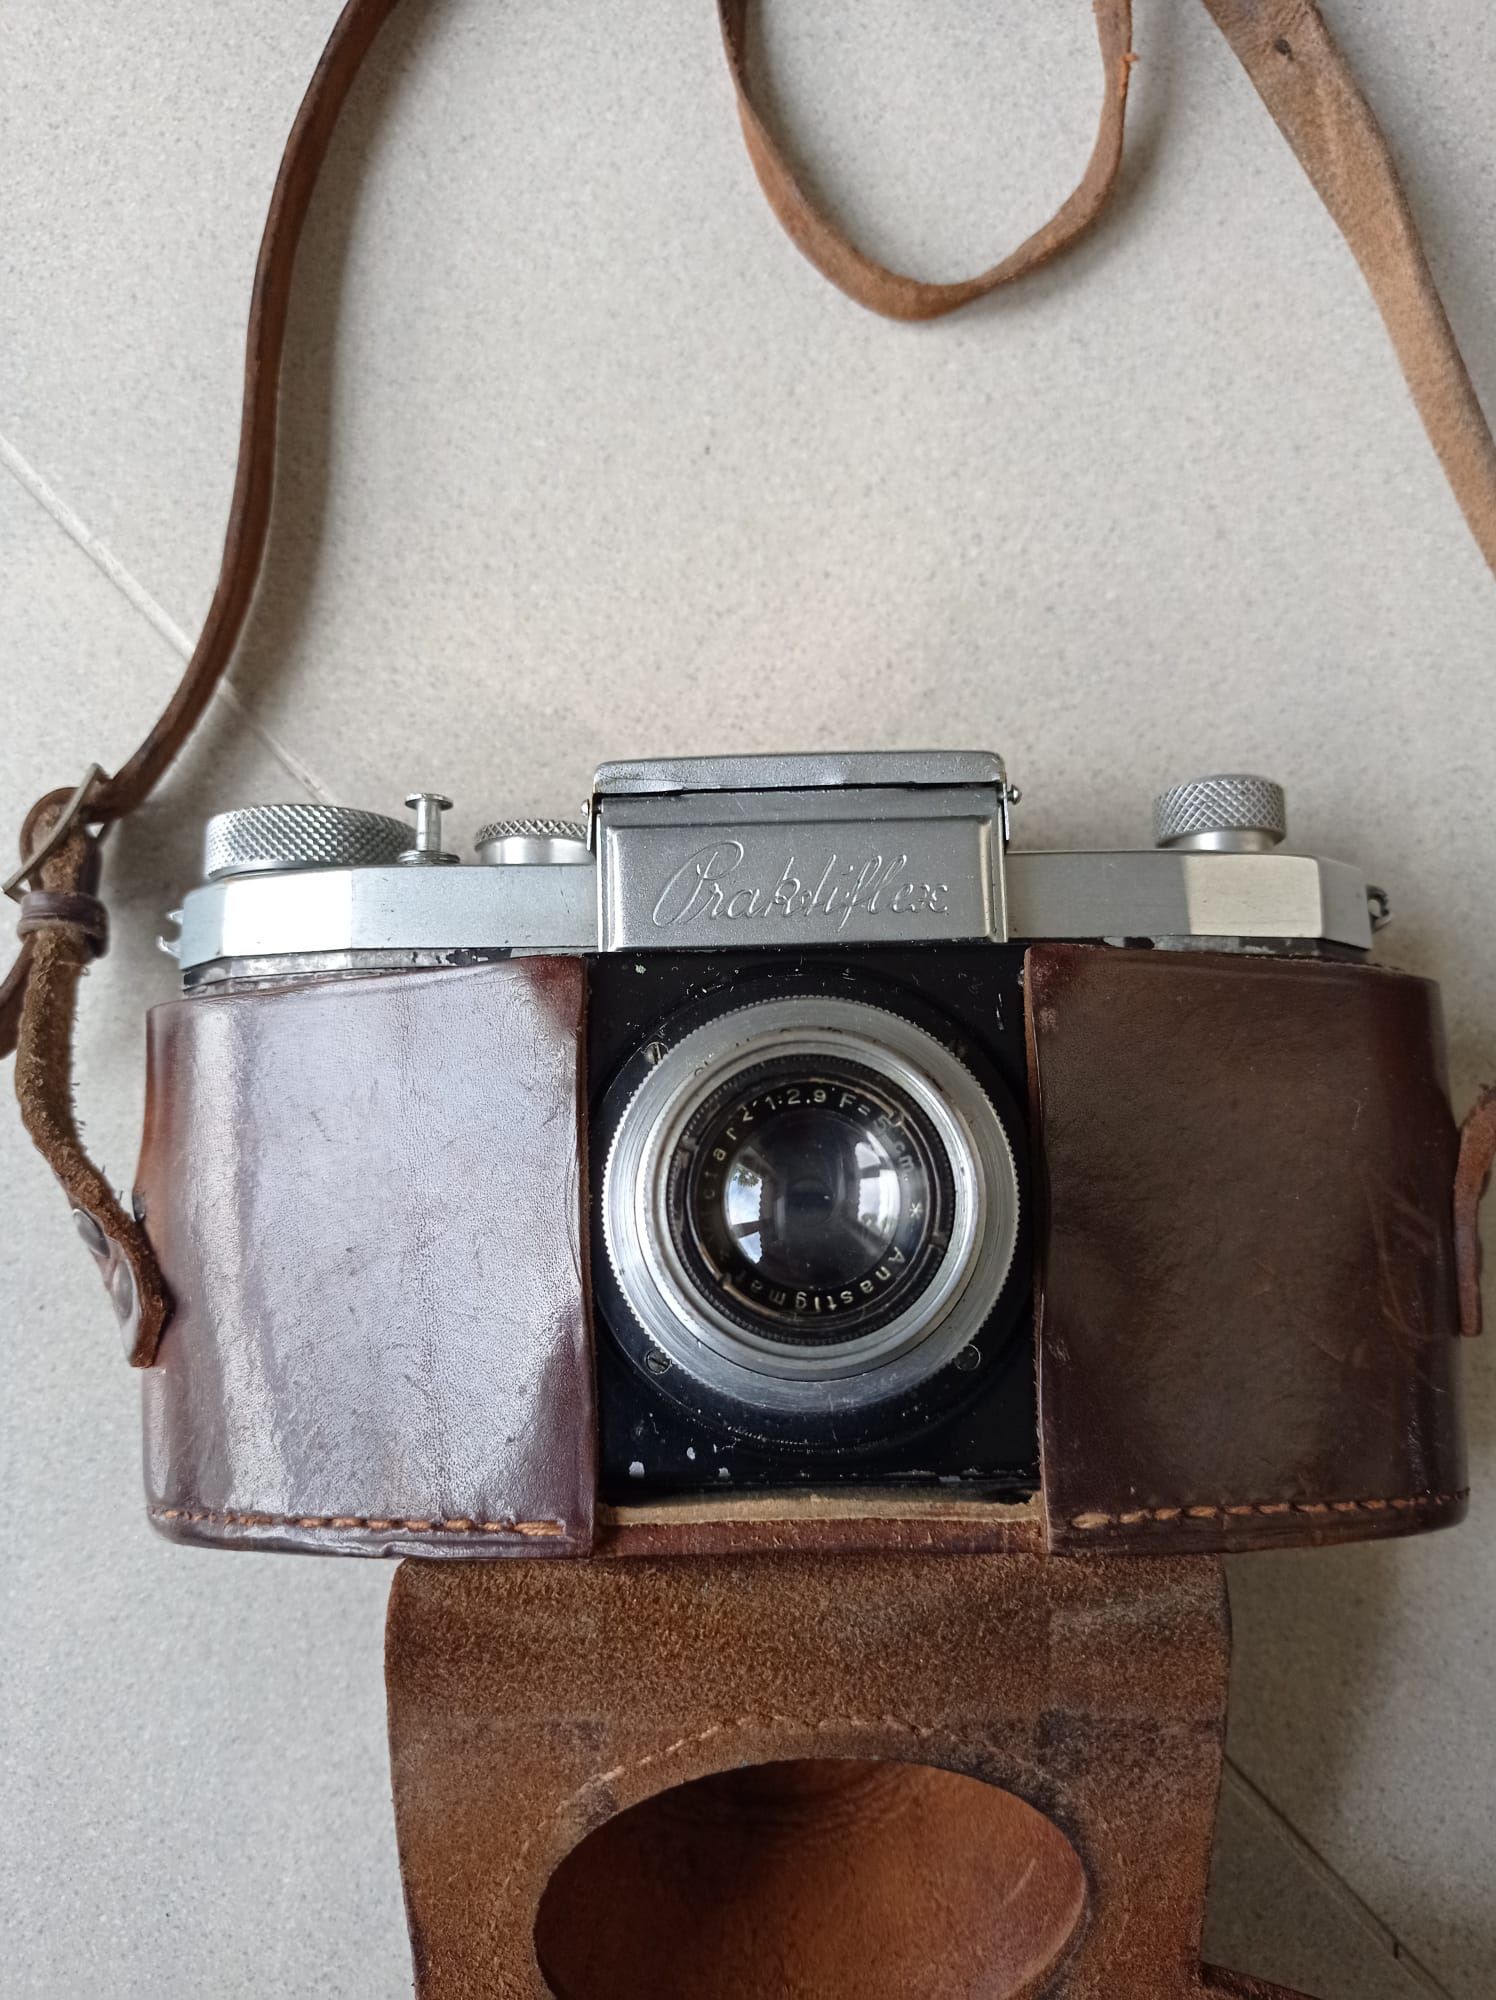 Stary aparat fotograficzny Praktiflex ze skórzanym futerałem